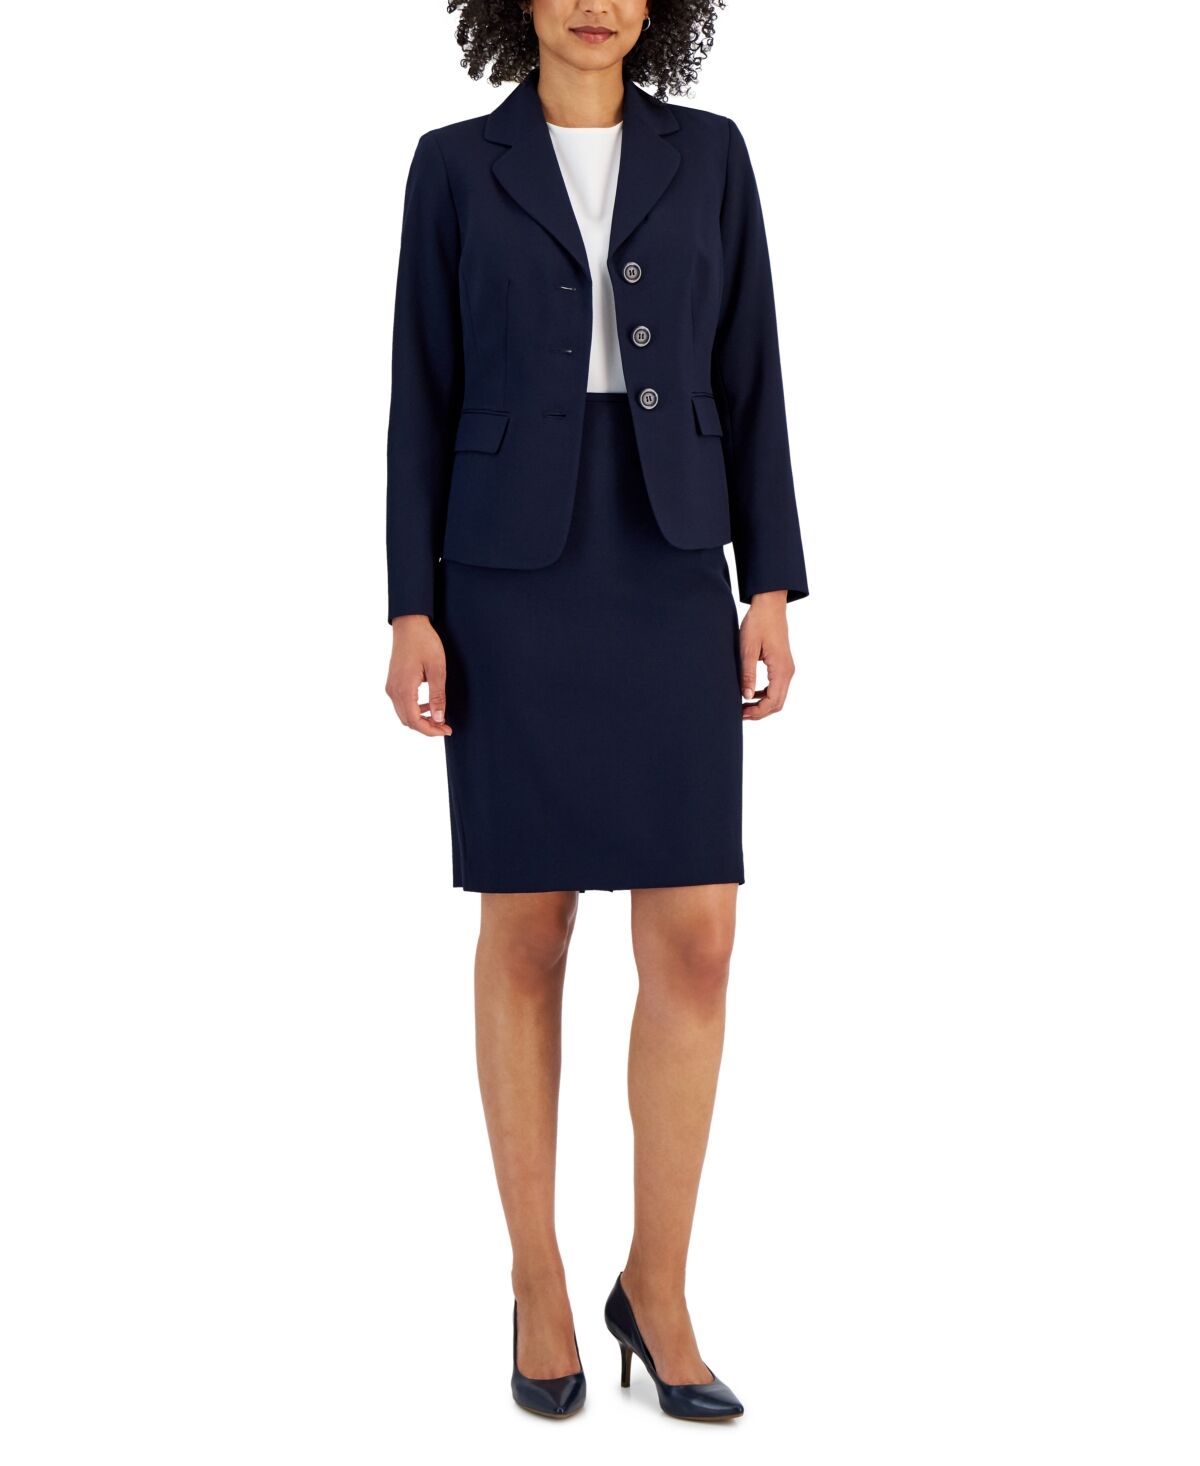 Le Suit Women's Notch-Collar Three-Button Skirt Suit - Navy